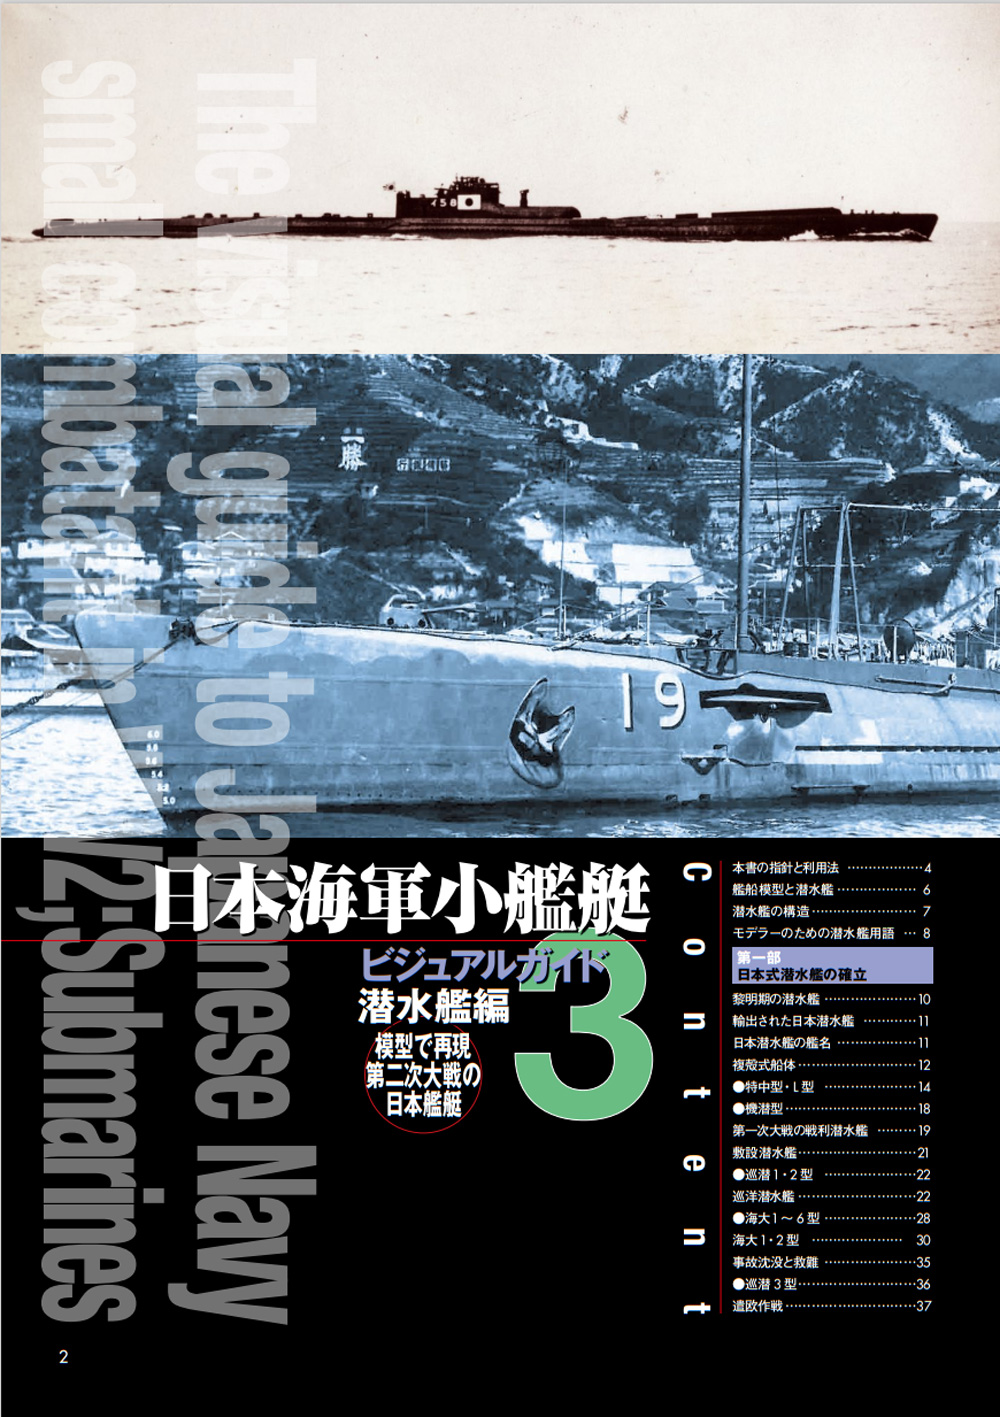 日本海軍小艦艇 ビジュアルガイド 3 潜水艦編 本 (大日本絵画 船舶関連書籍 No.23368-2) 商品画像_1